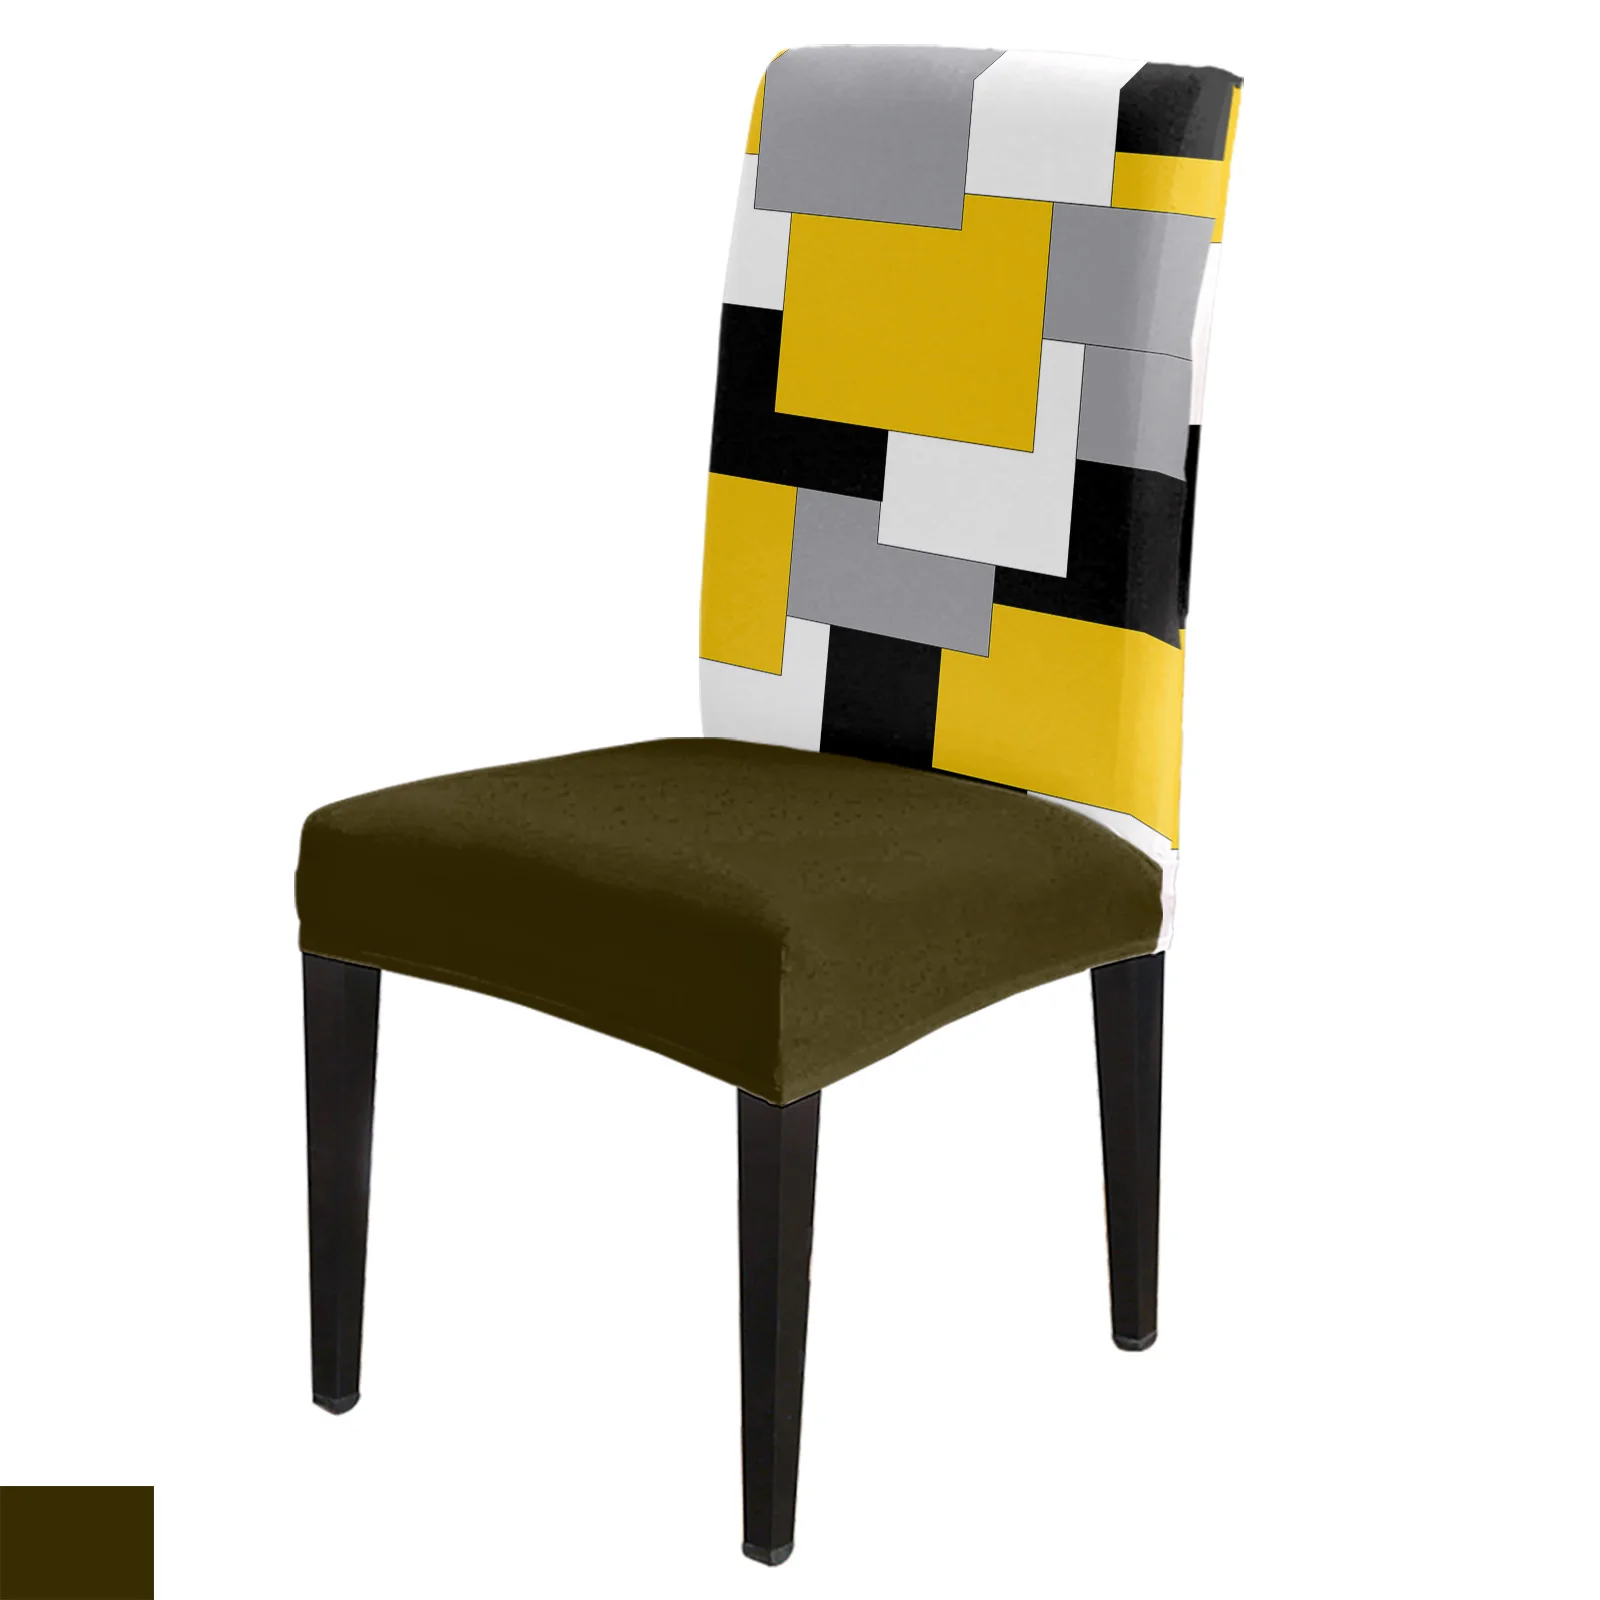 

Чехол на стул, эластичный чехол из спандекса, желтого, серого, черного цветов, в стиле пэчворк, в средневековом стиле с абстрактным искусством, для дома и офиса